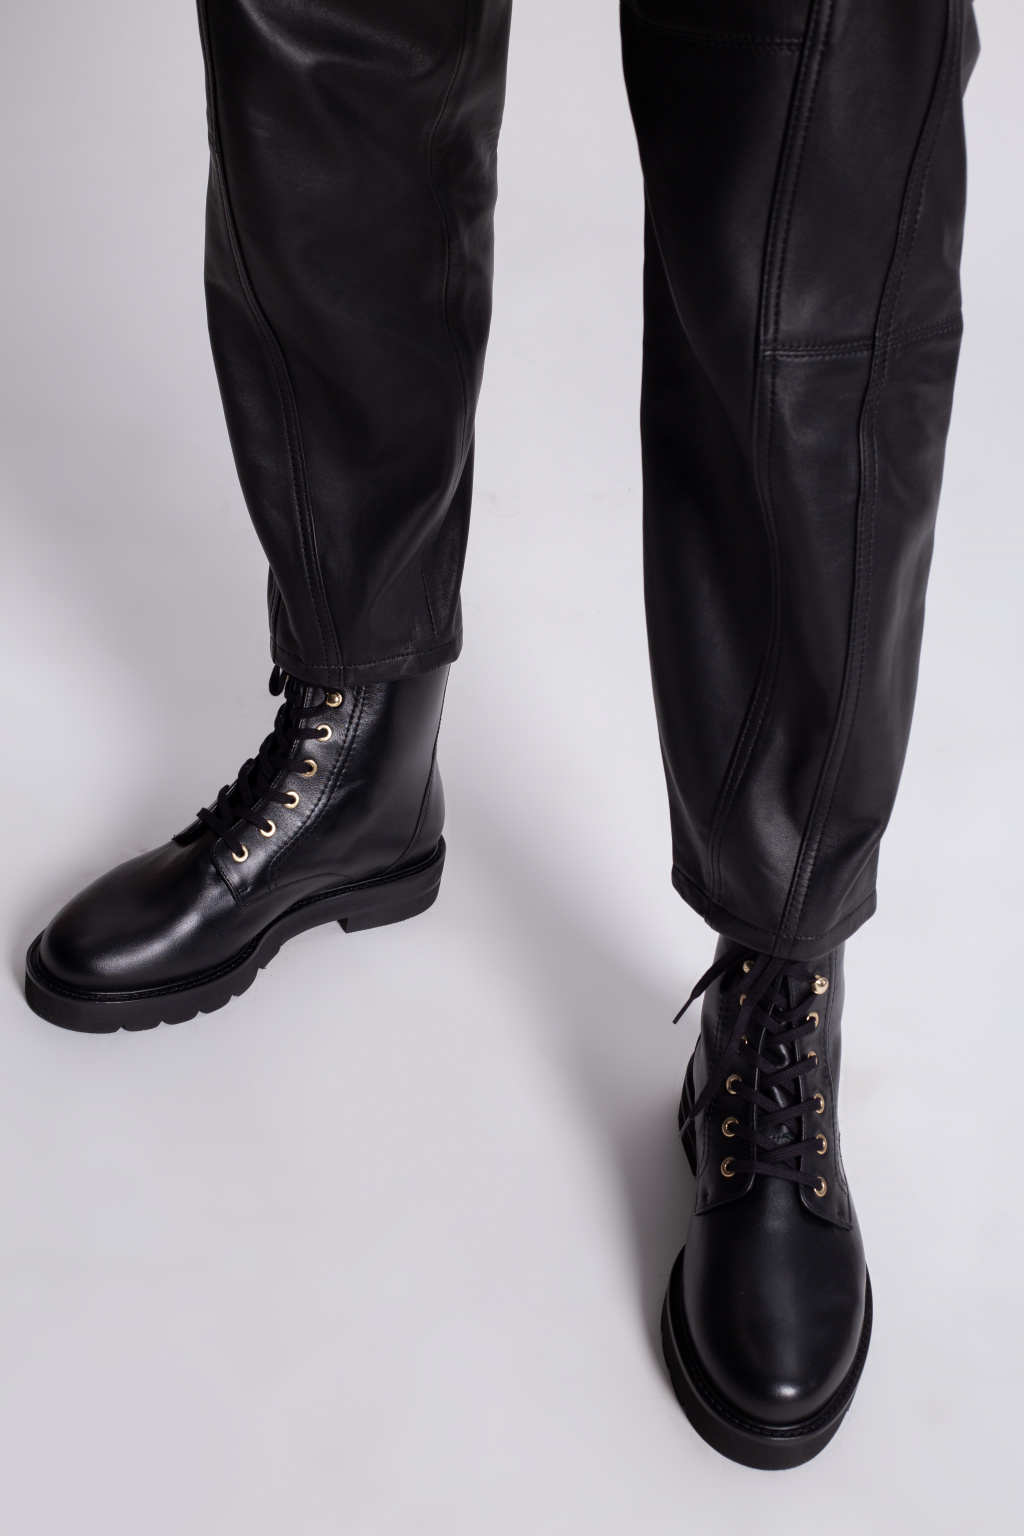 Mila' leather ankle boots Stuart Weitzman - GenesinlifeShops